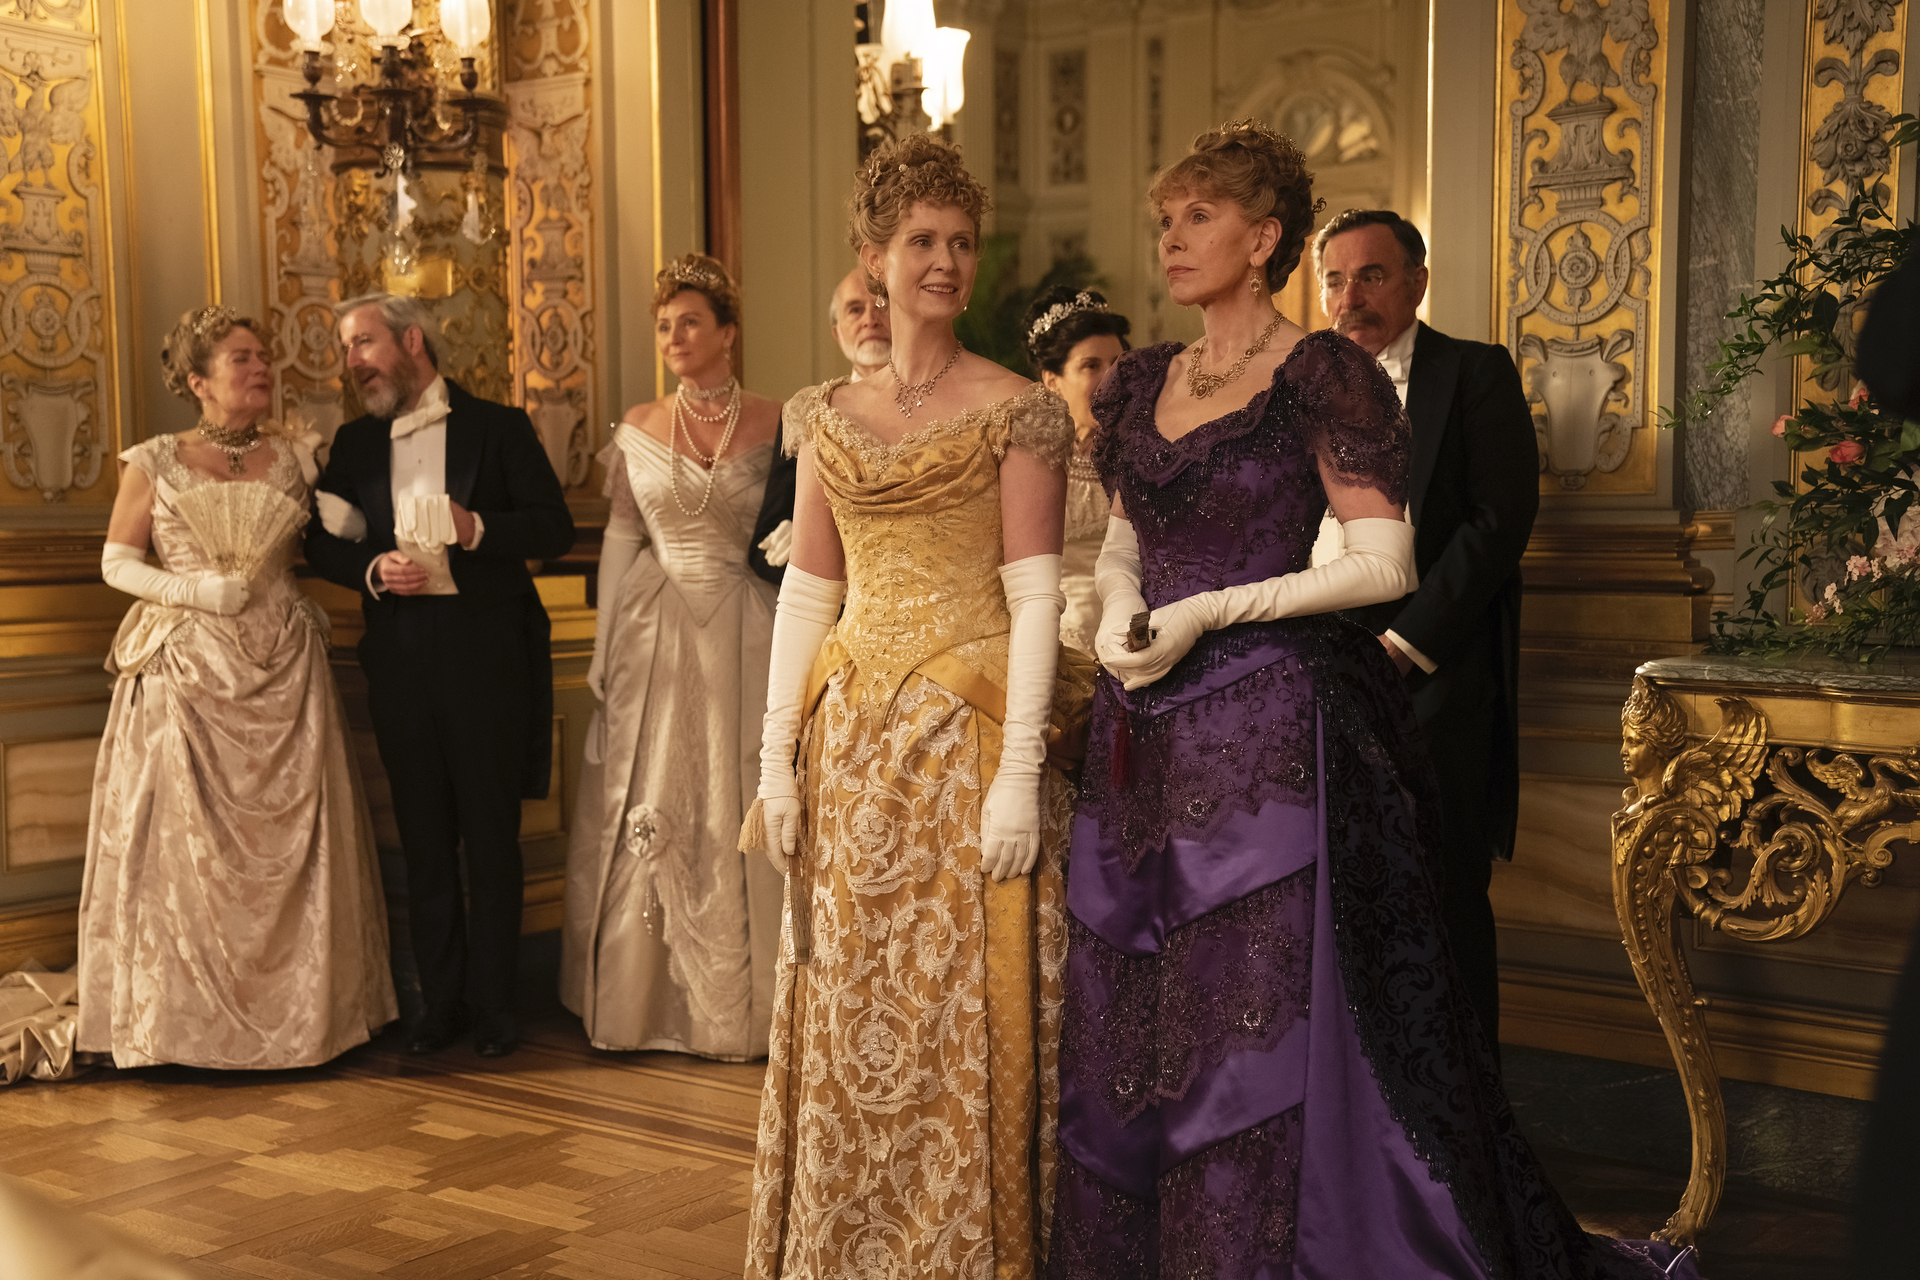 Ako ste voljeli seriju Downton Abbey, onda morate dati priliku povijesnoj drami